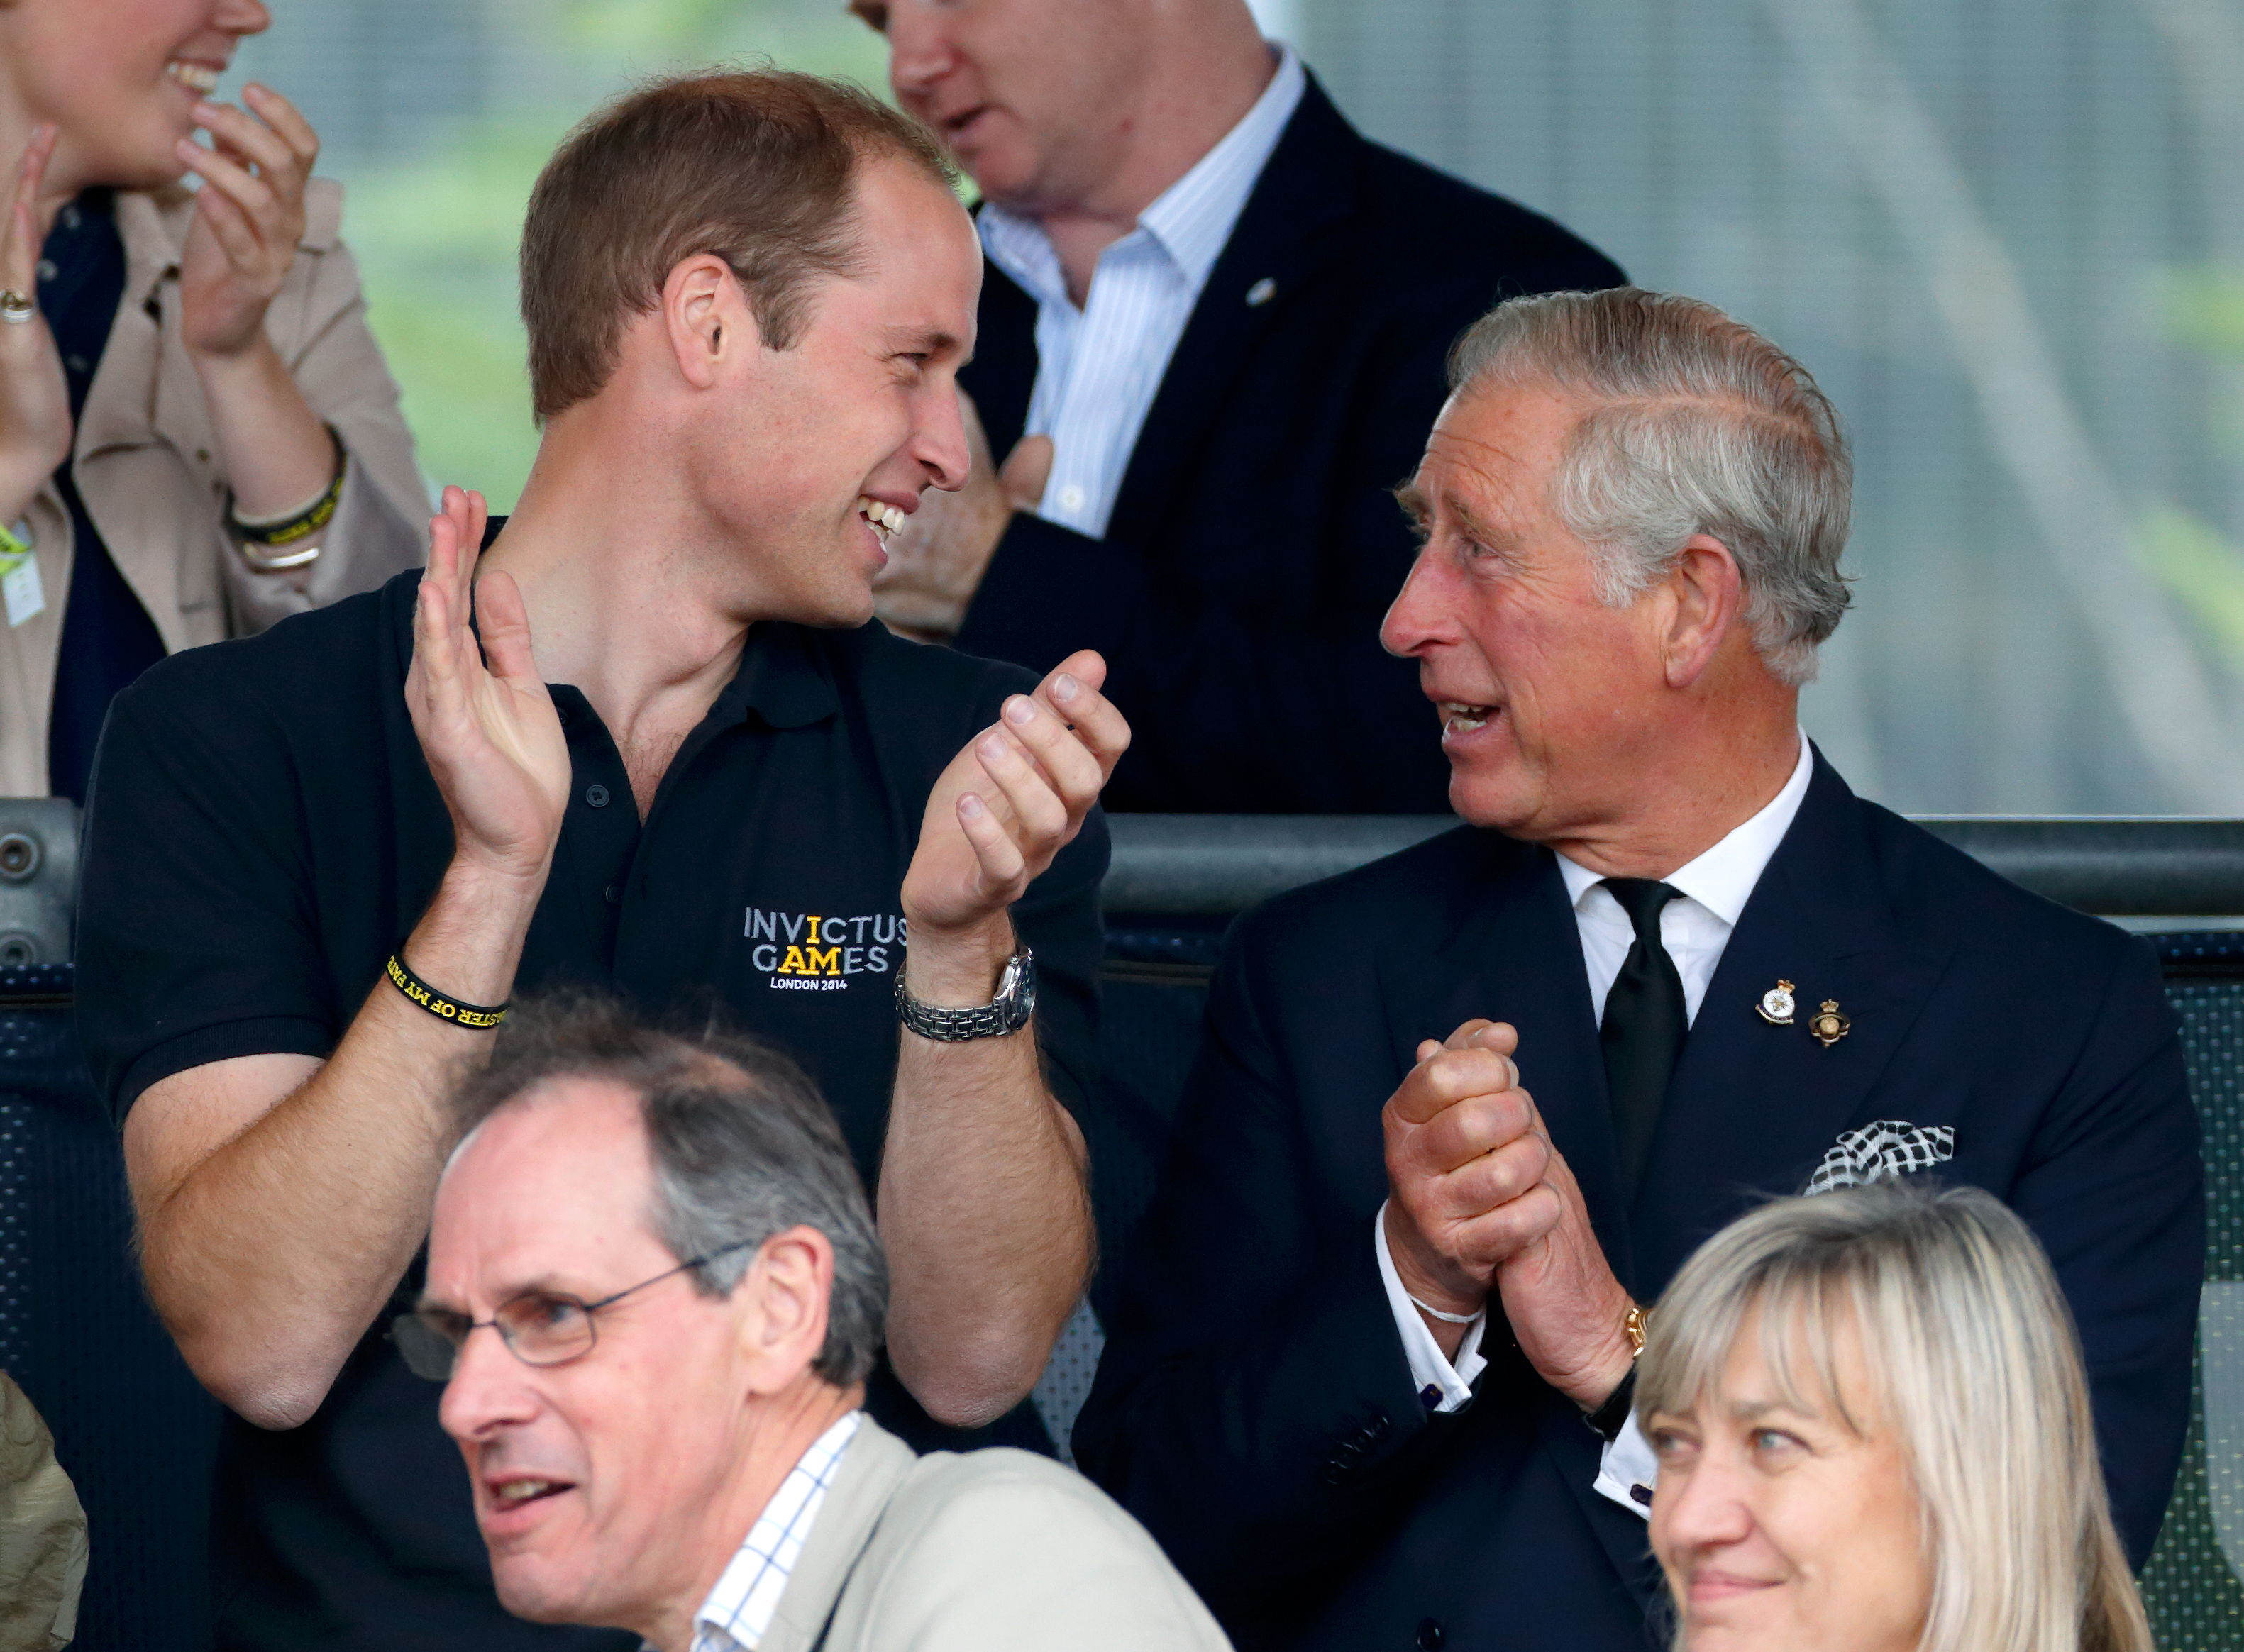 El príncipe William y el rey Charles III en los Juegos Invictus en Londres, Inglaterra, el 11 de septiembre de 2014 | Fuente: Getty Images